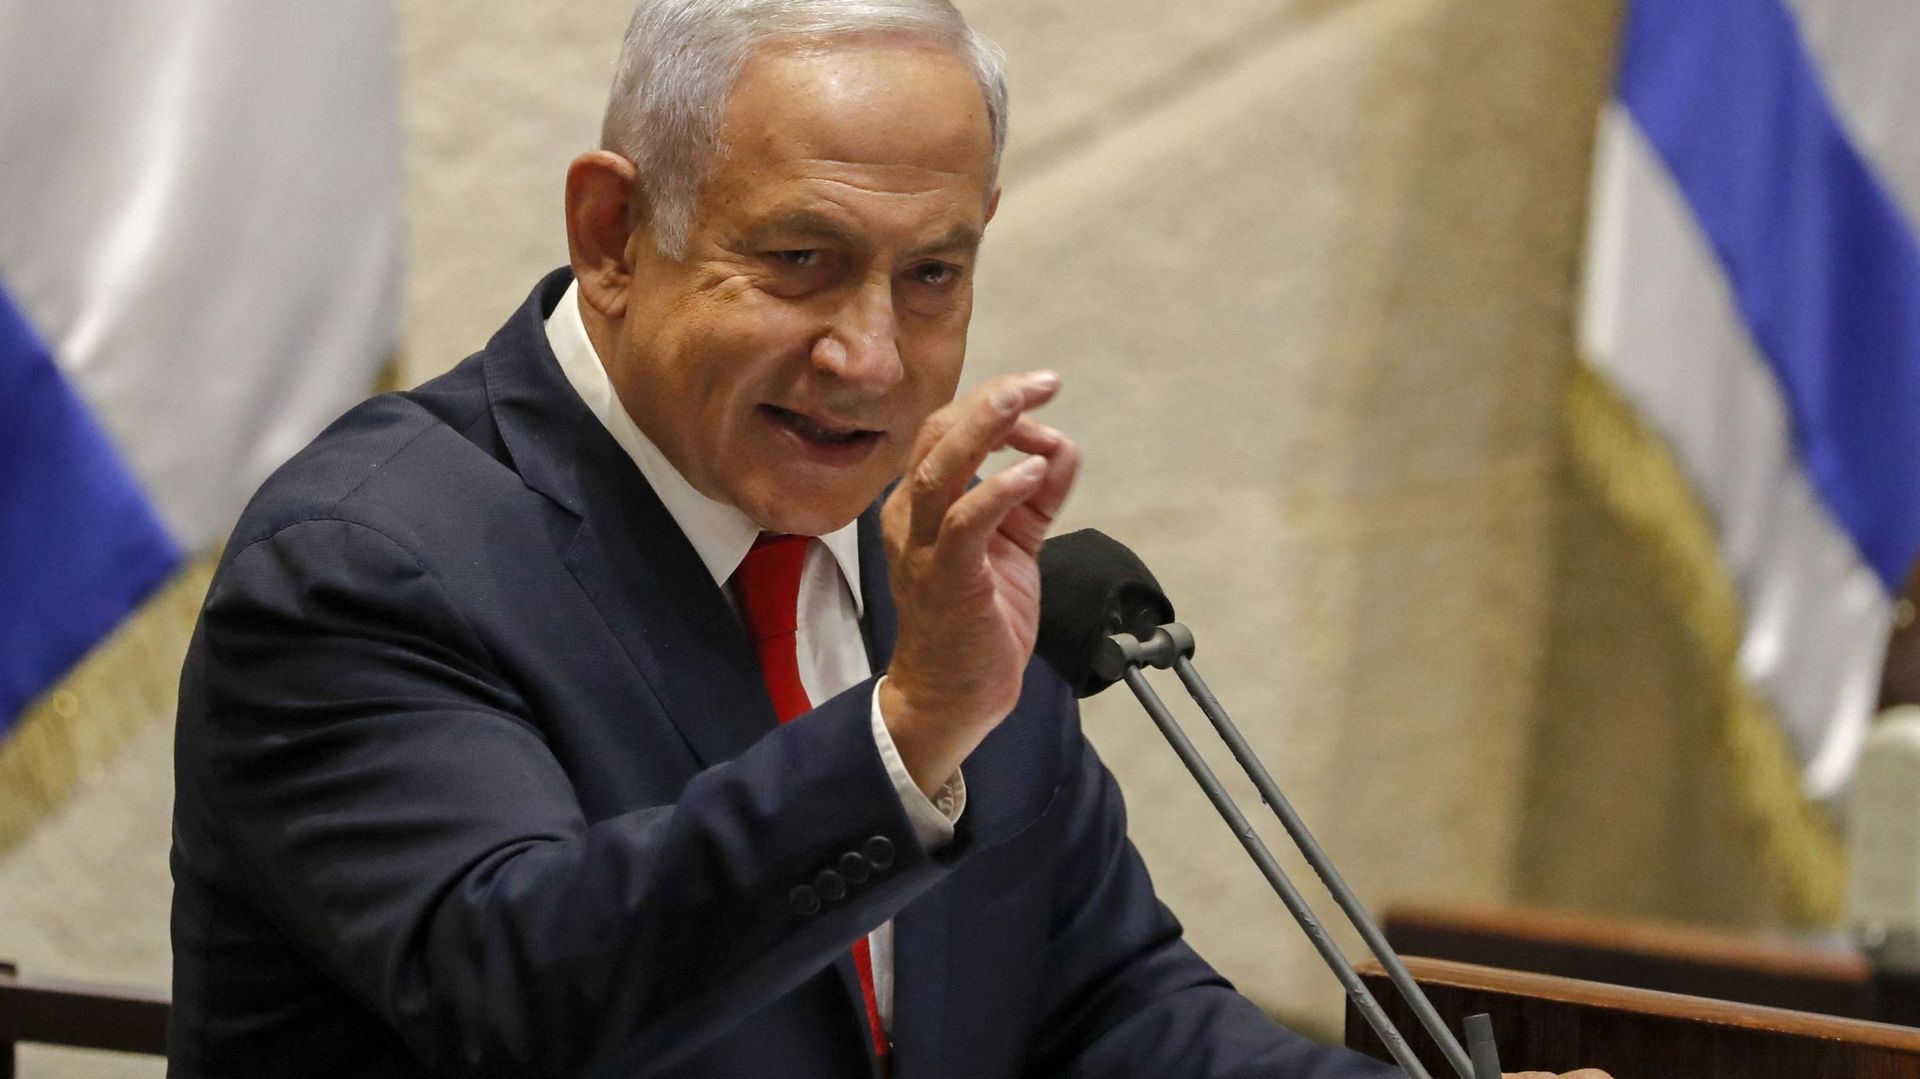 Israël : accusé de corruption, Netanyahu dit vouloir rester en politique